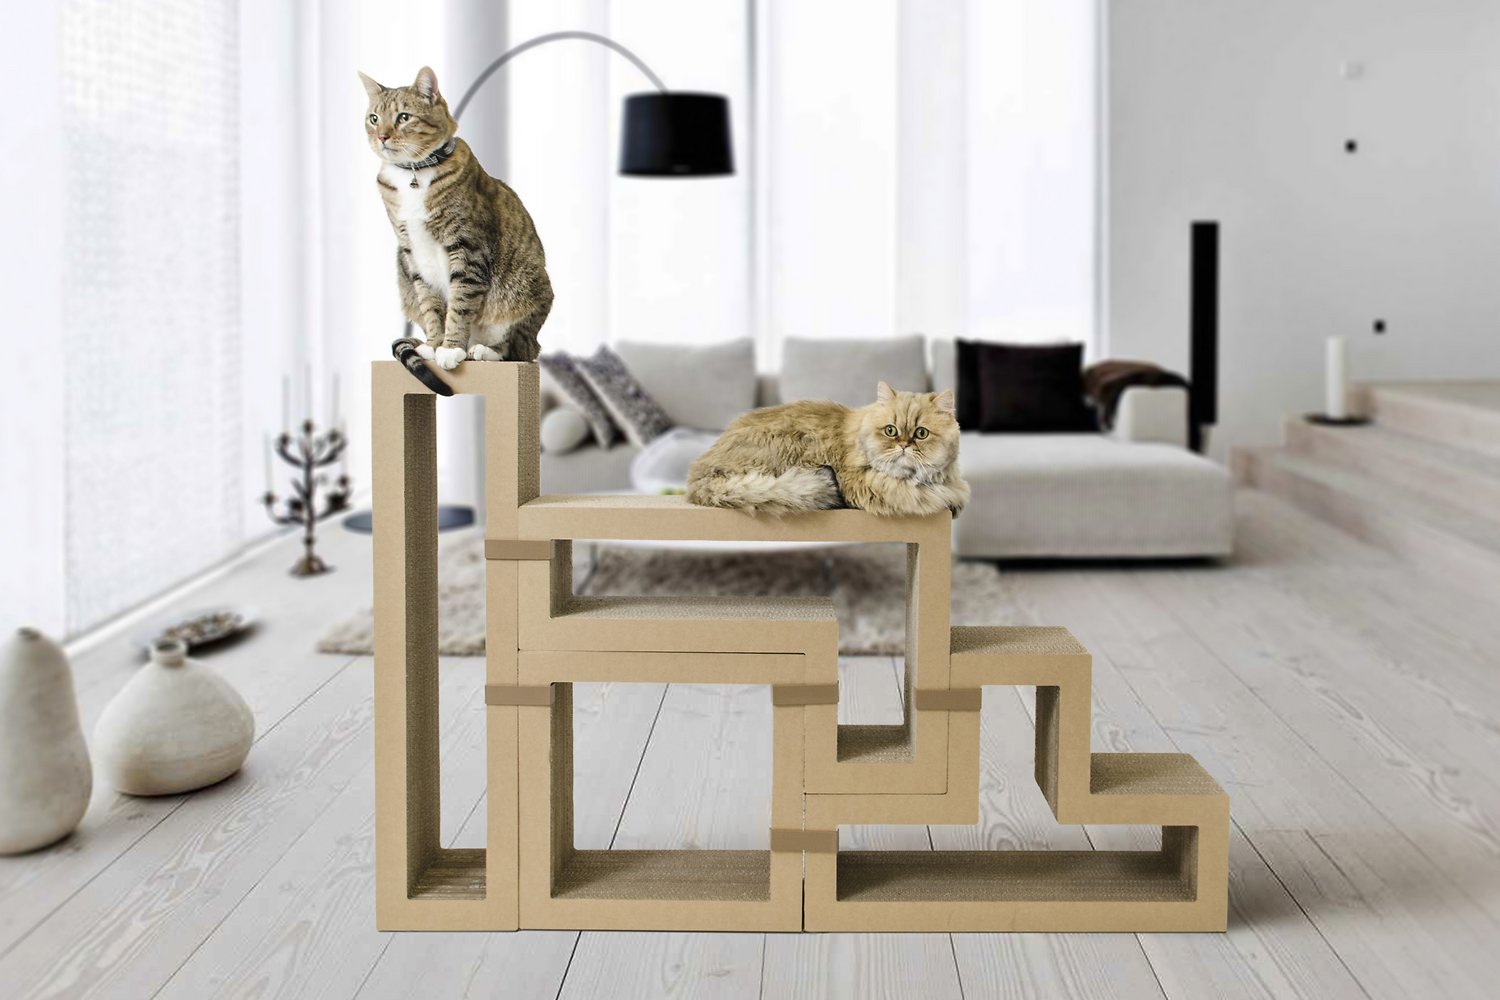 Как выбрать стильный кошачий домик для любимой кисы?